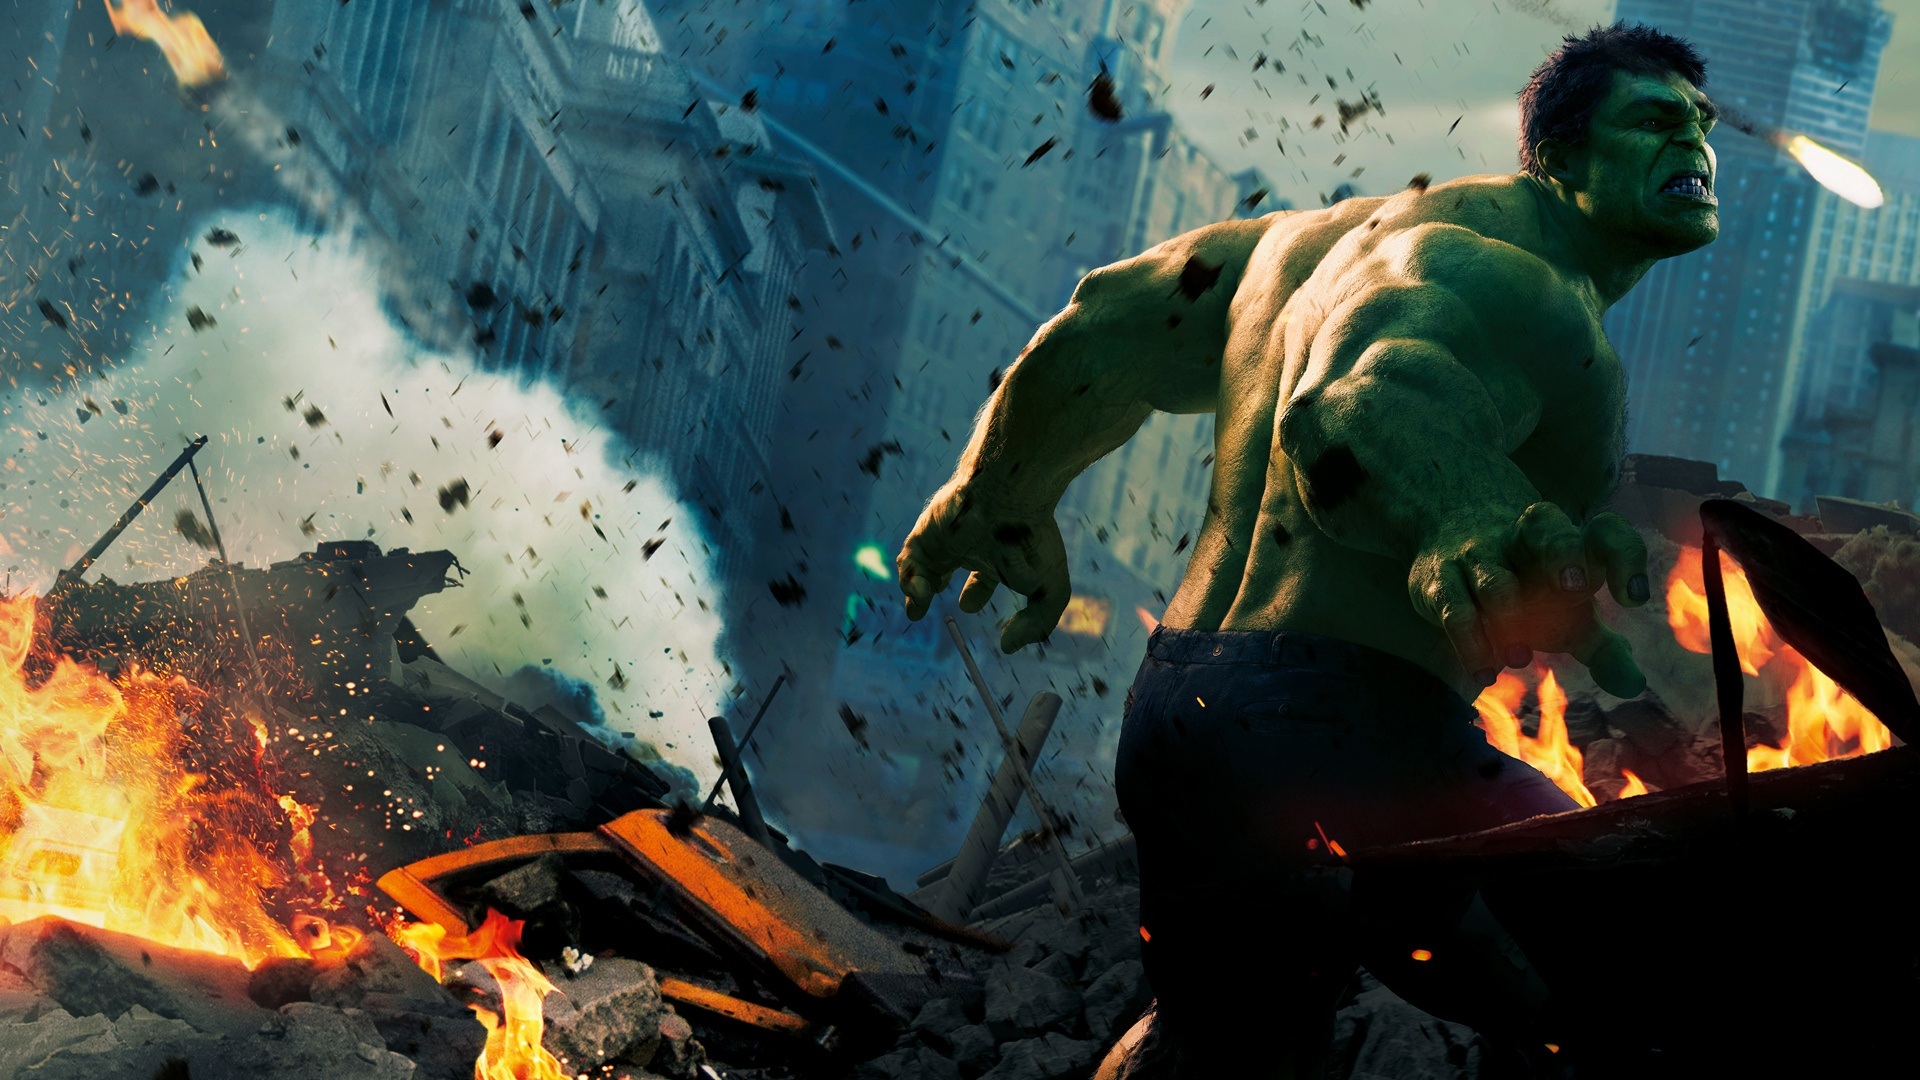 marvels, The, Avengers, Superhero, Hulk, Ff Wallpaper